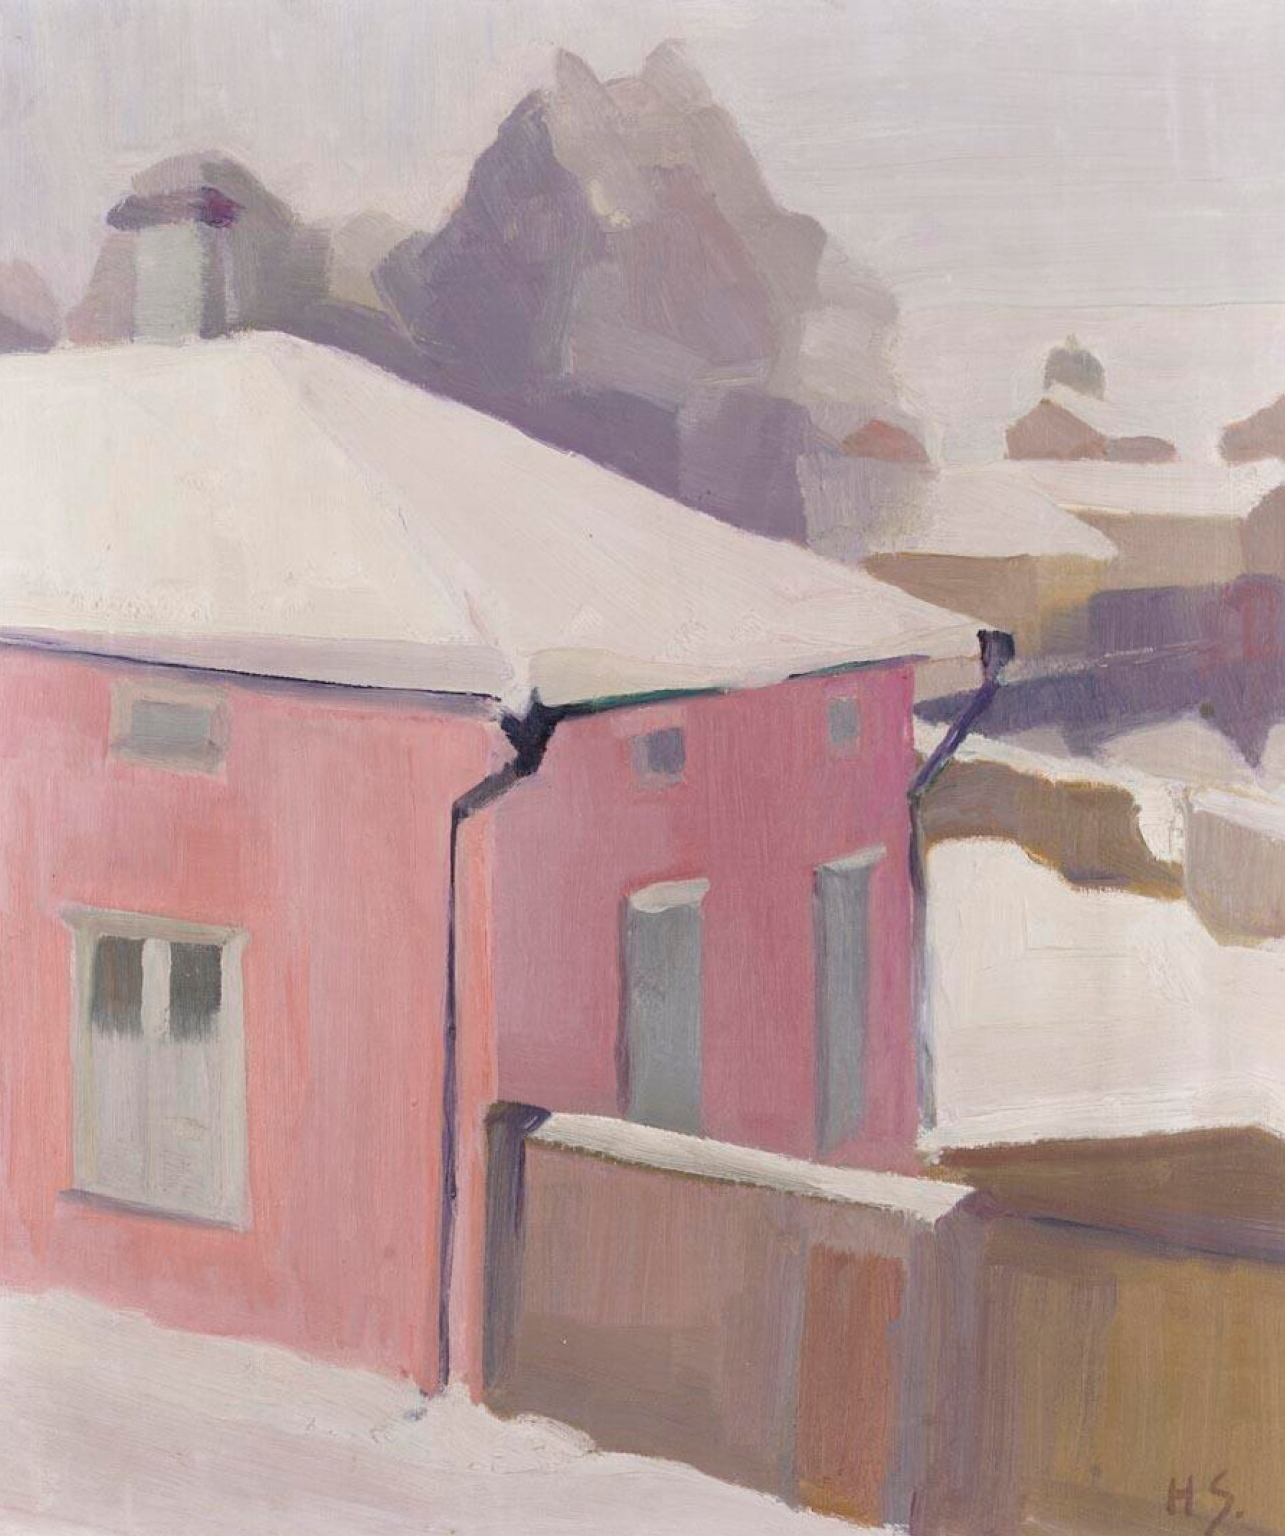 तम्मिसारी में एक यार्ड का दृश्य by Helene Schjerfbeck - १९१९–१९२० - ४२.५ x ३६.५ सेमी 